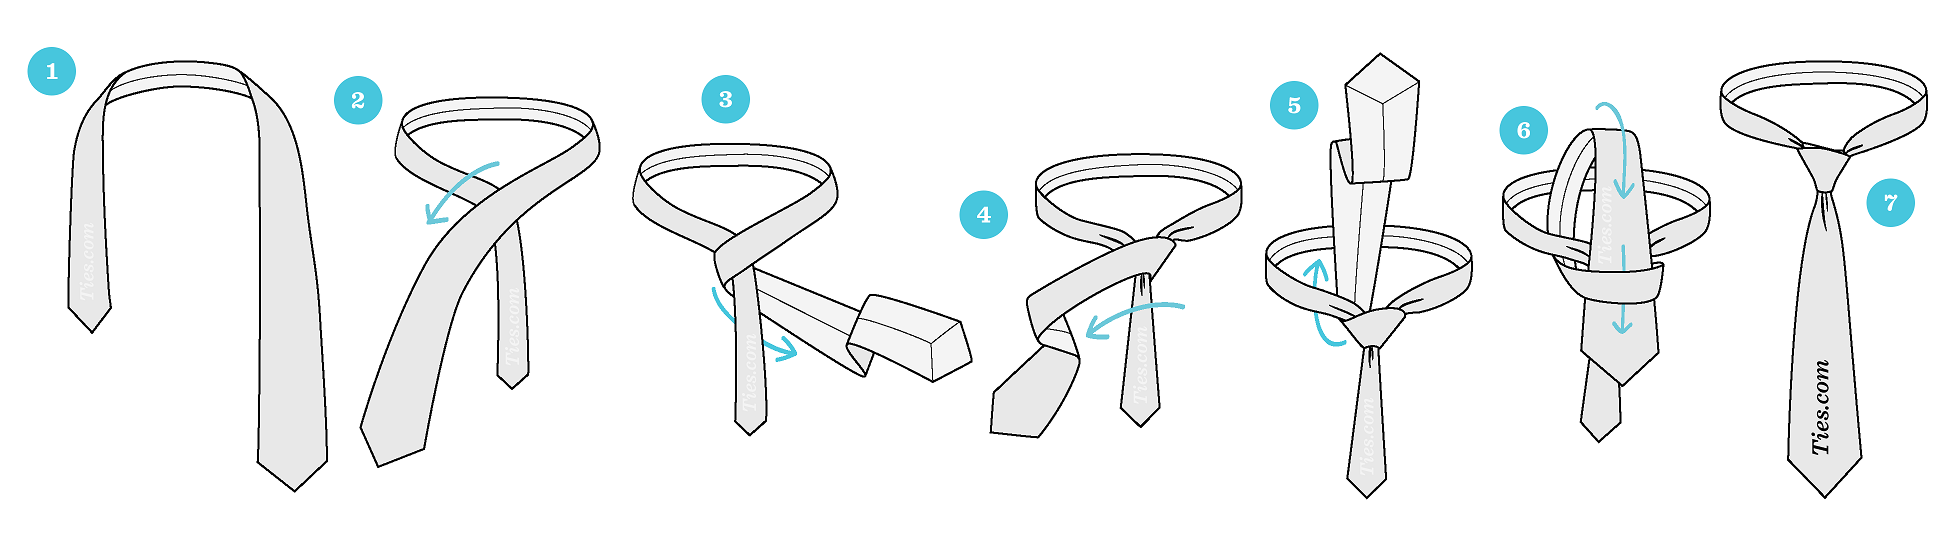 نحوه بستن کراوات - آموزش بستن کراوات مردانه